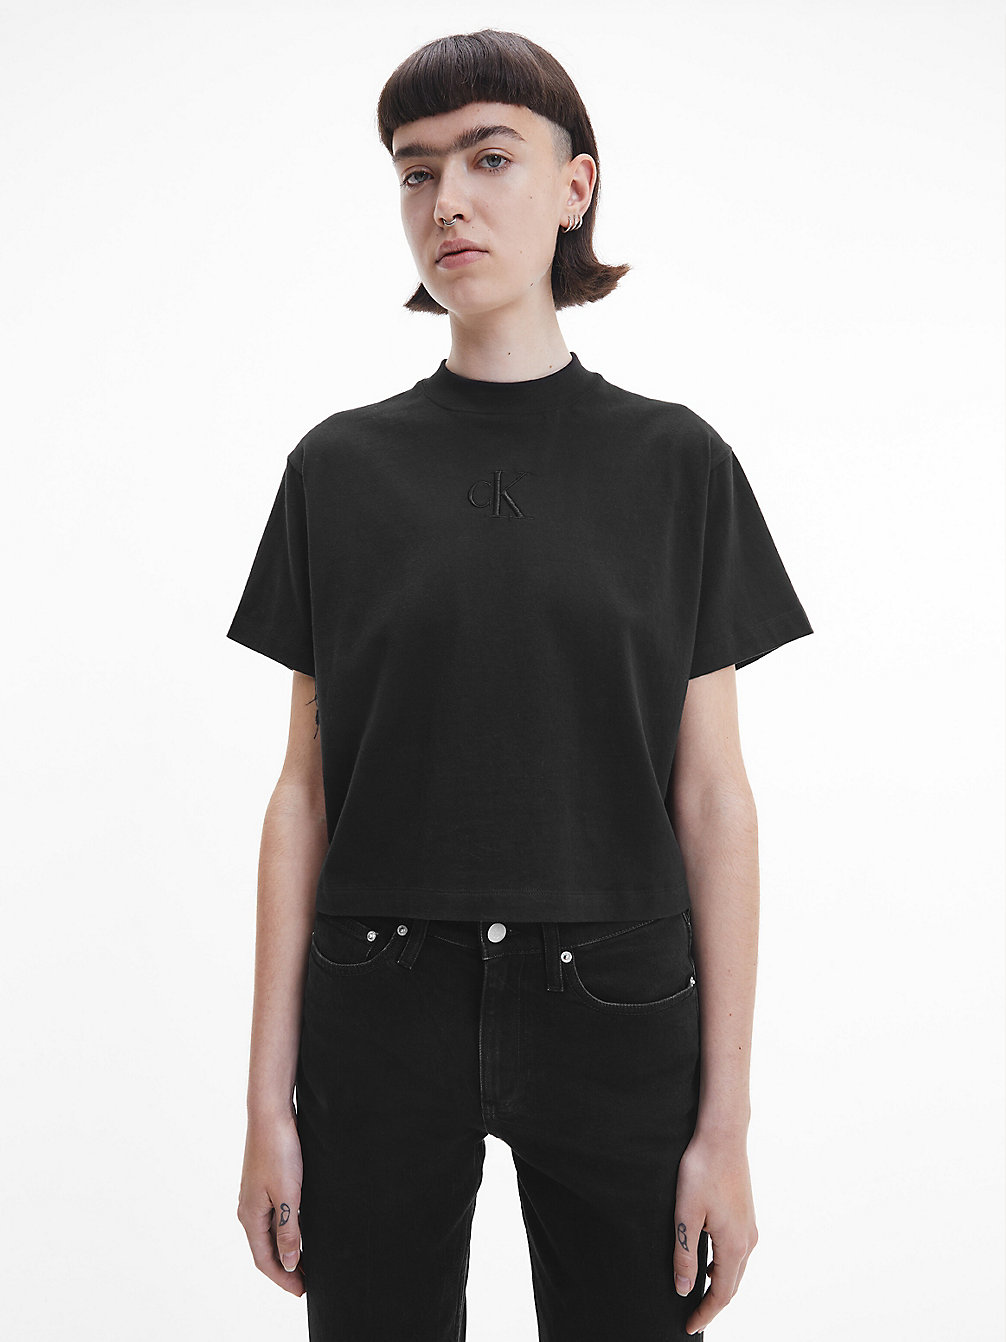 CK BLACK > Luźny T-Shirt > undefined Kobiety - Calvin Klein